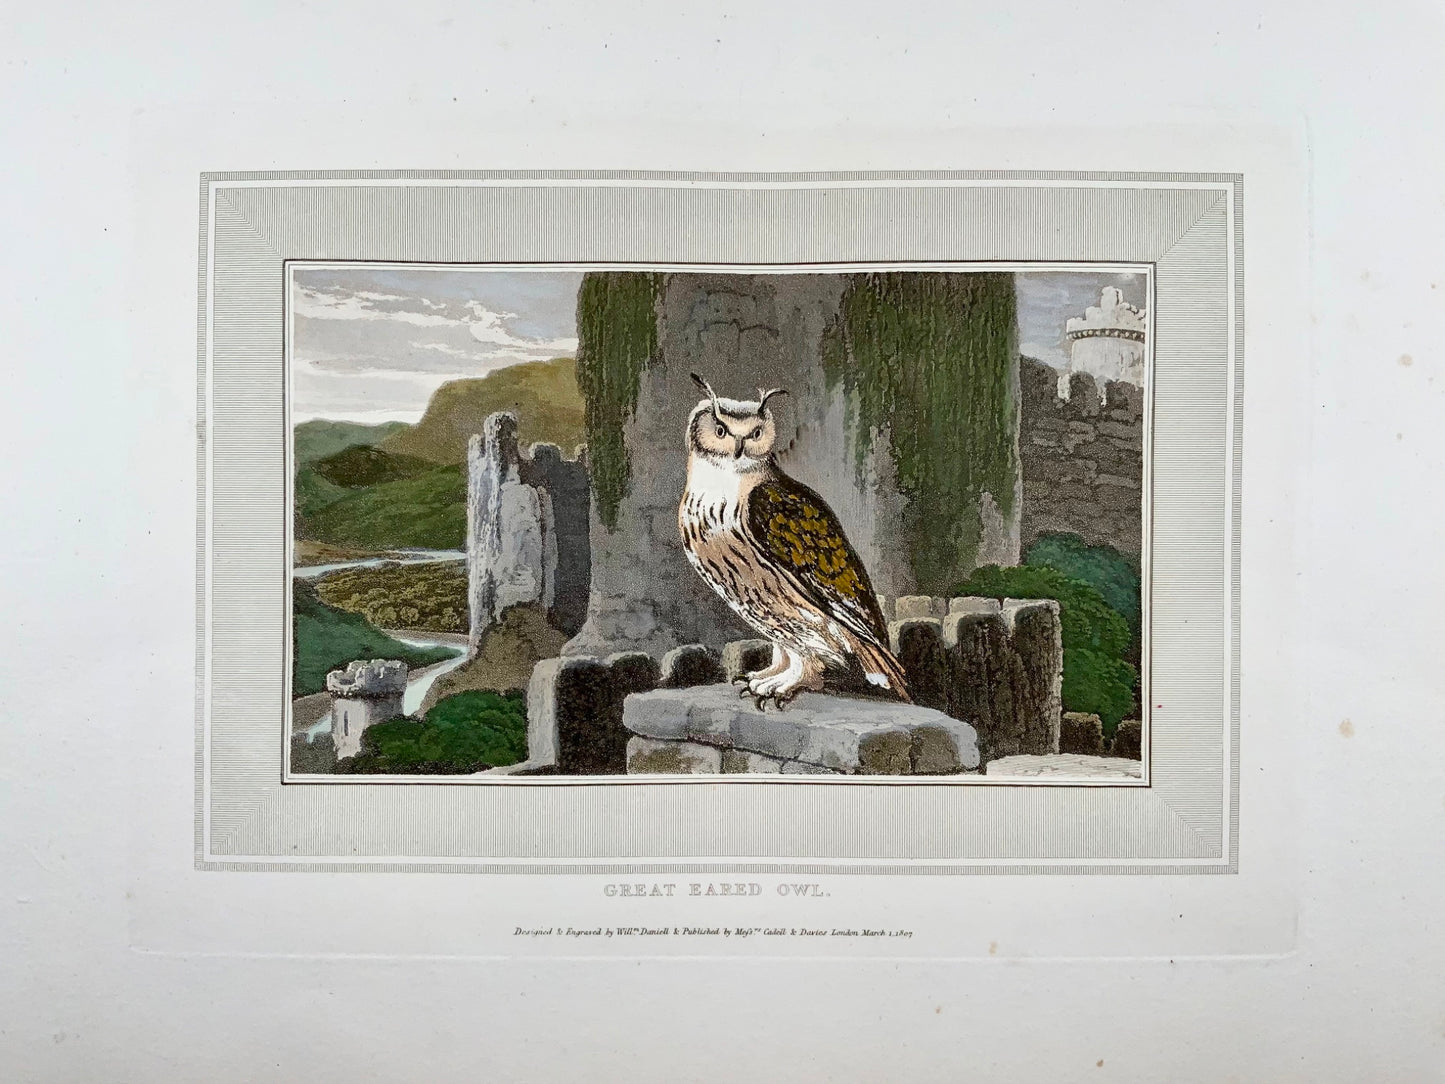 1807 William Daniell, Gufo dalle orecchie grandi, ornitologia, acquatinta colorata a mano